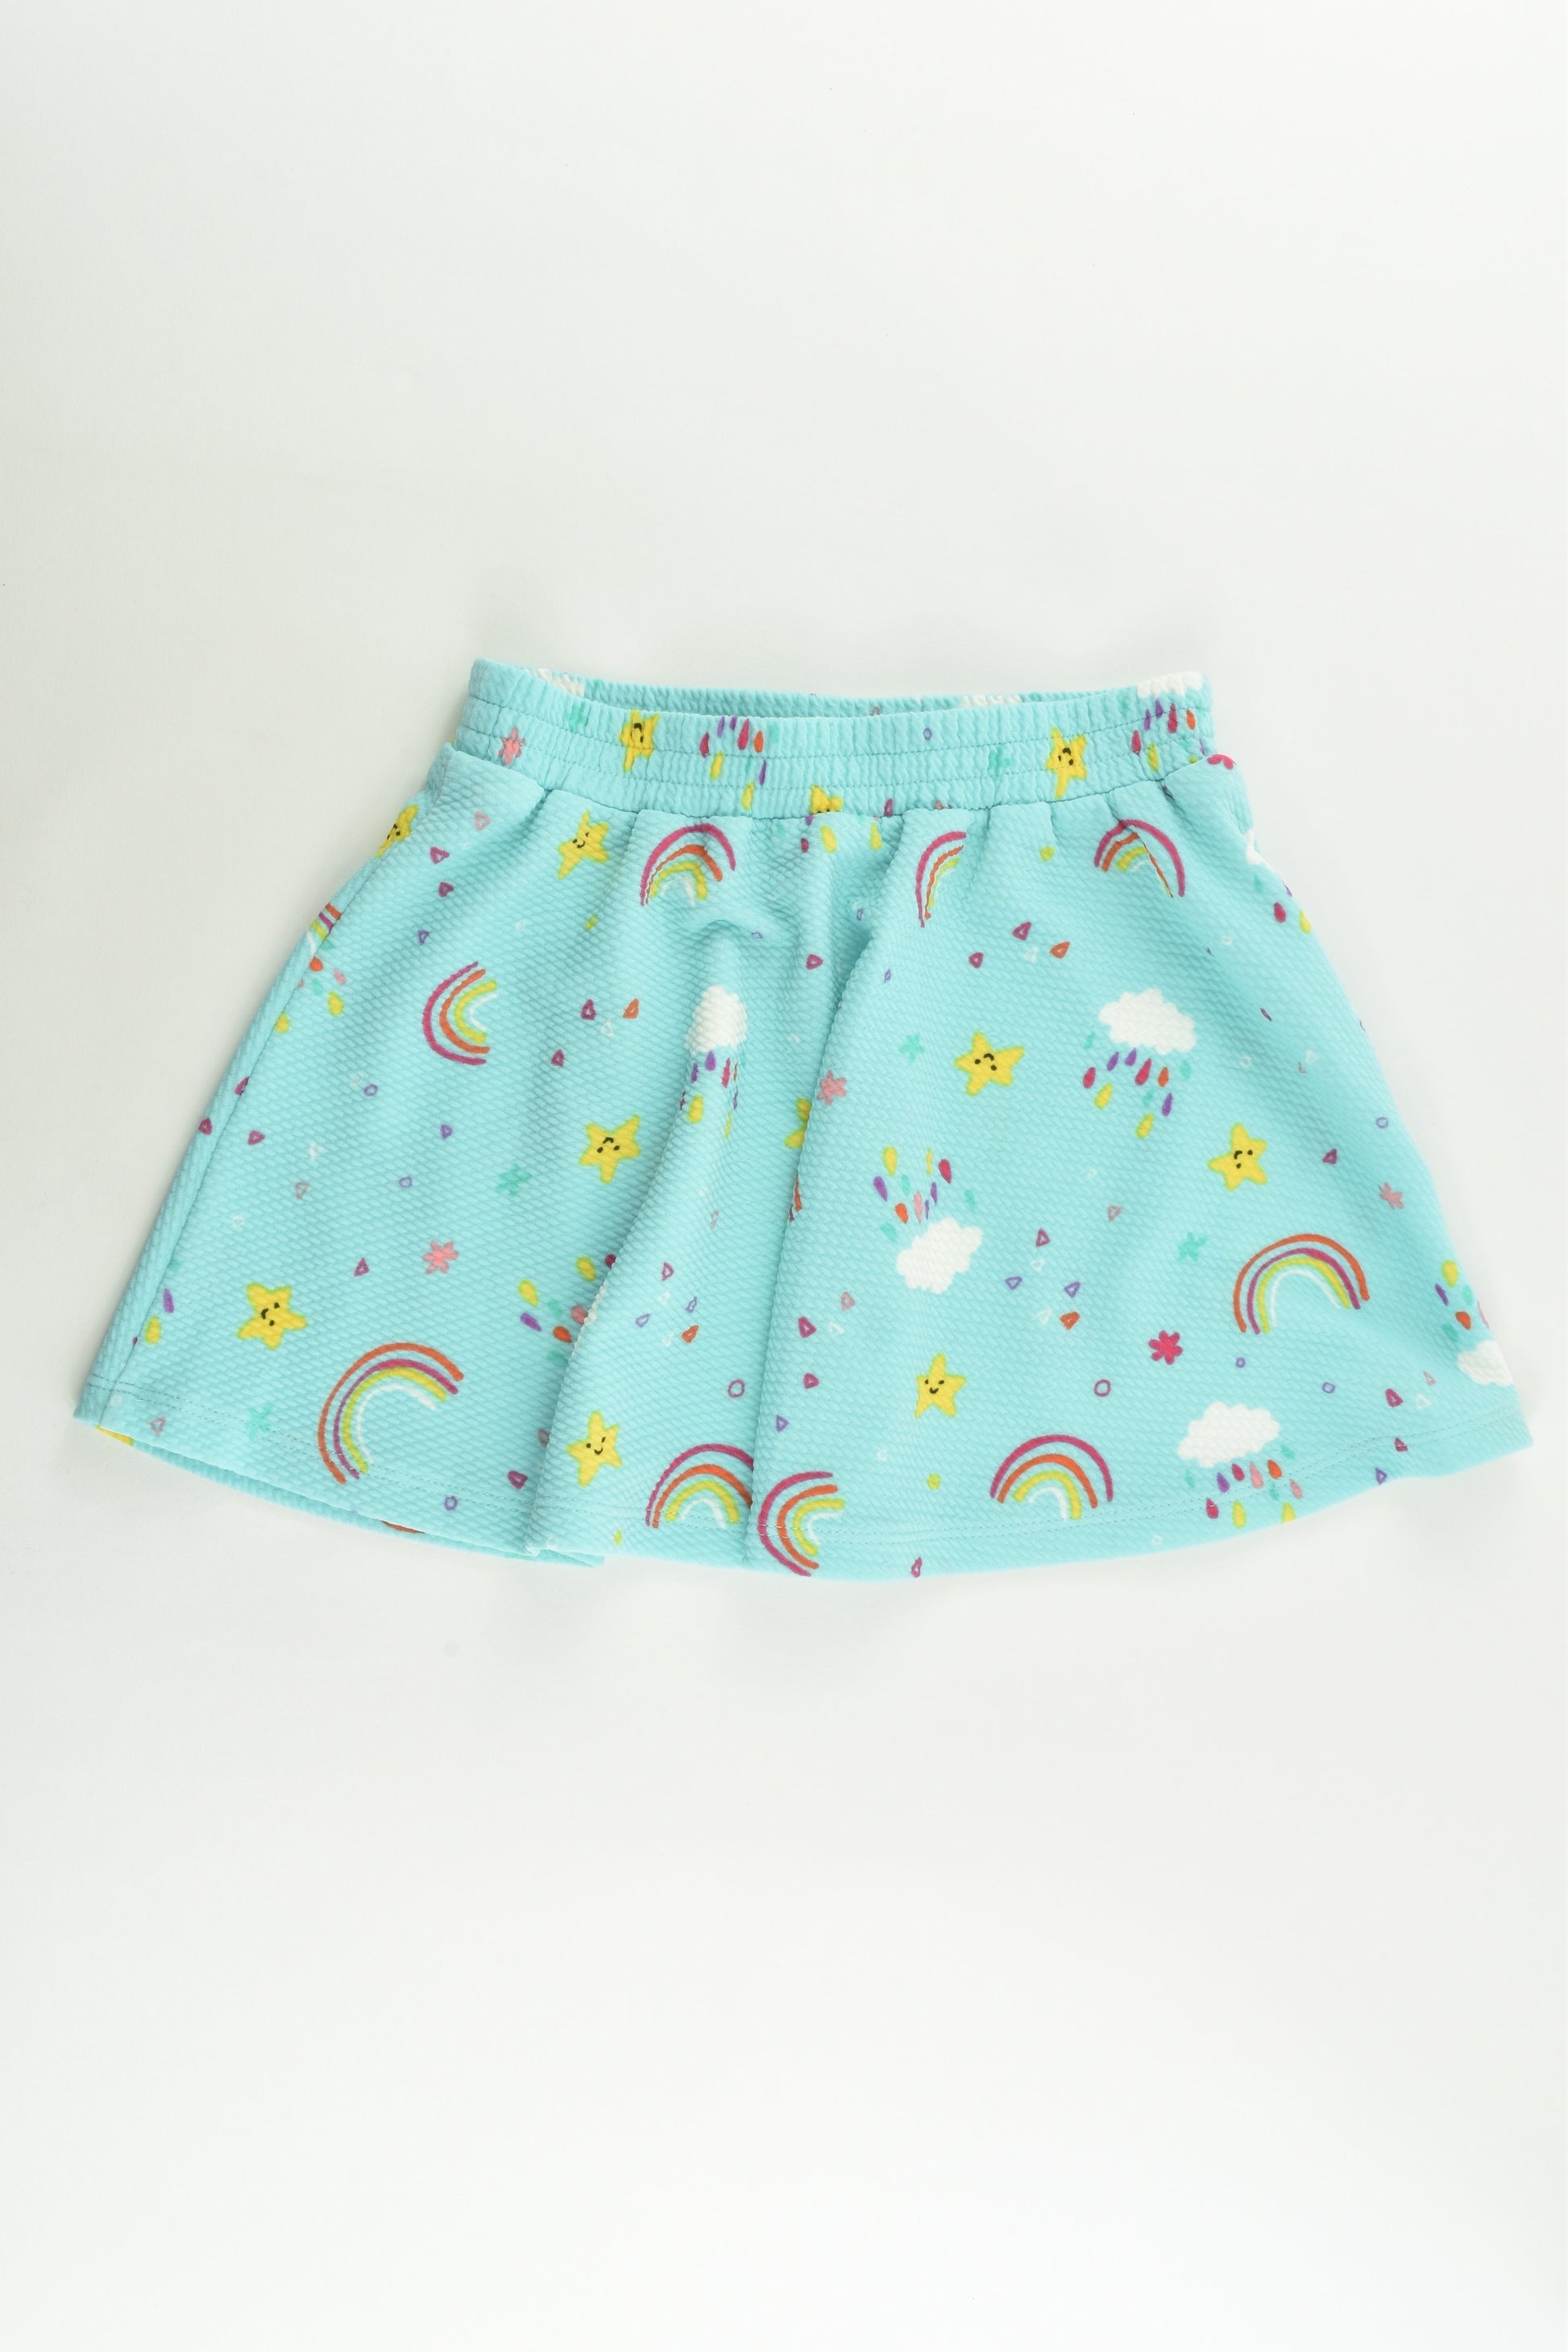 NEW St Bernard for Dunnes Stores Size 2-3 (98 cm) Rainbows Skirt